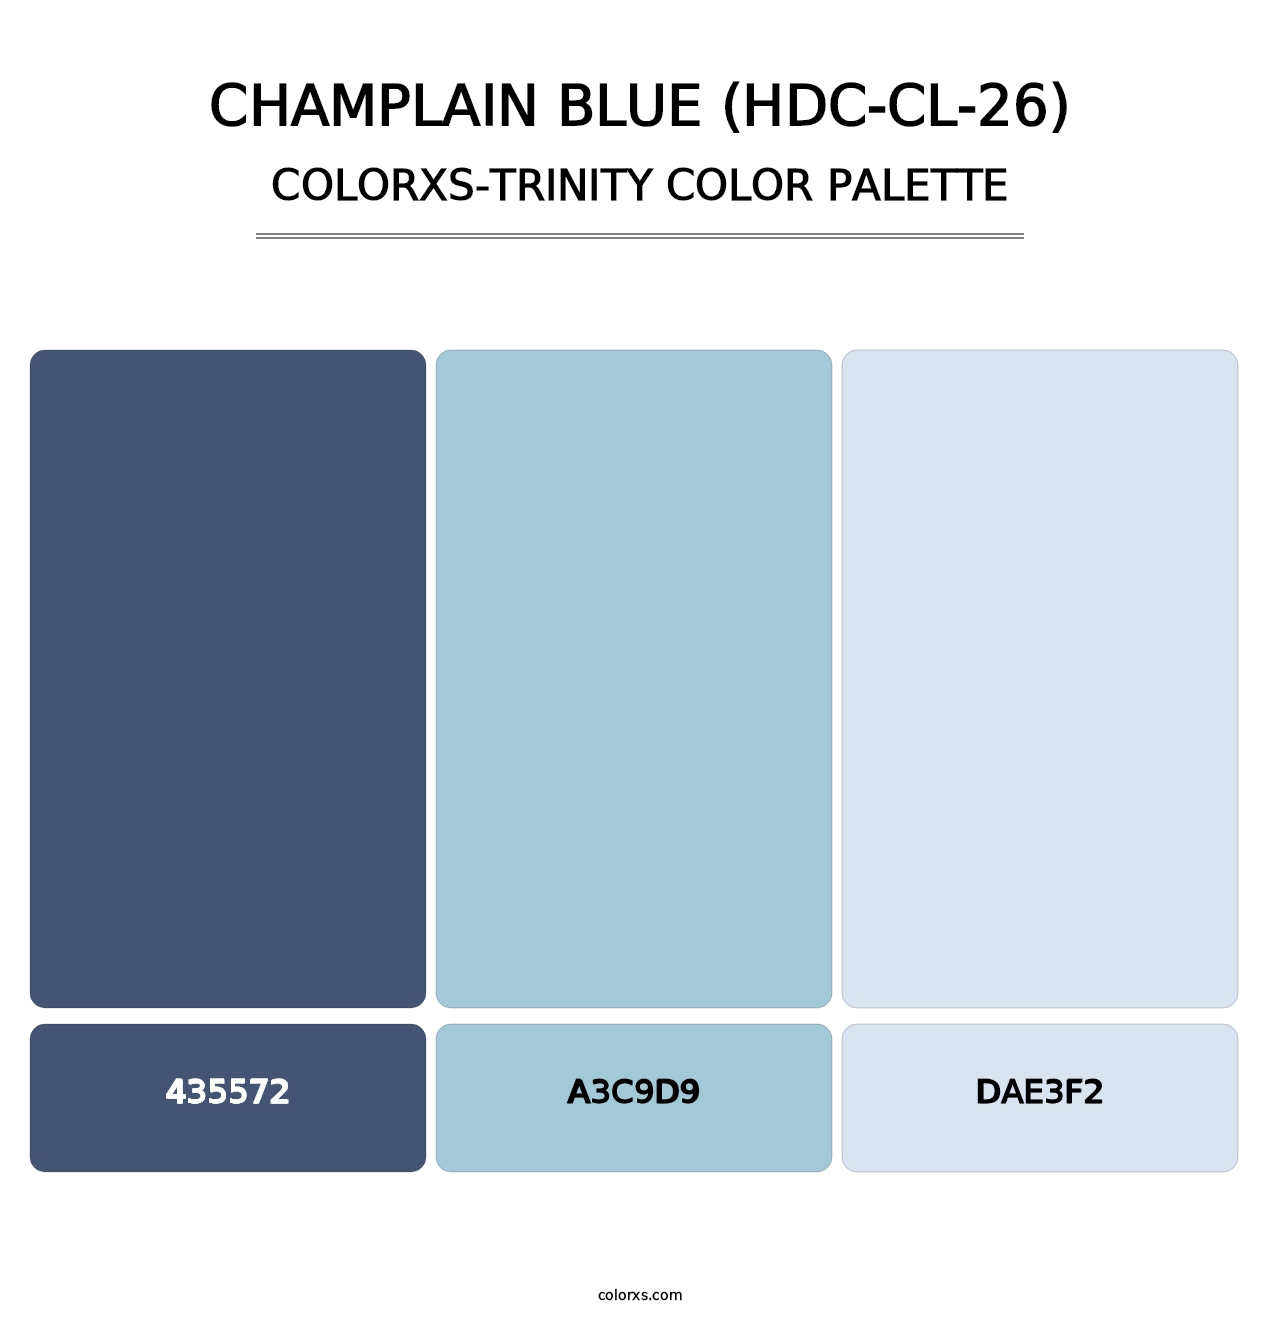 Champlain Blue (HDC-CL-26) - Colorxs Trinity Palette